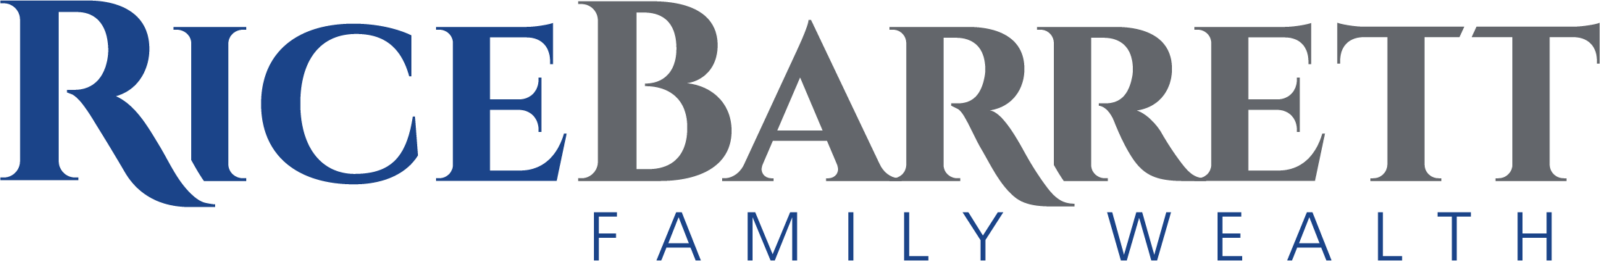 RiceBarrett Family Wealth Logo